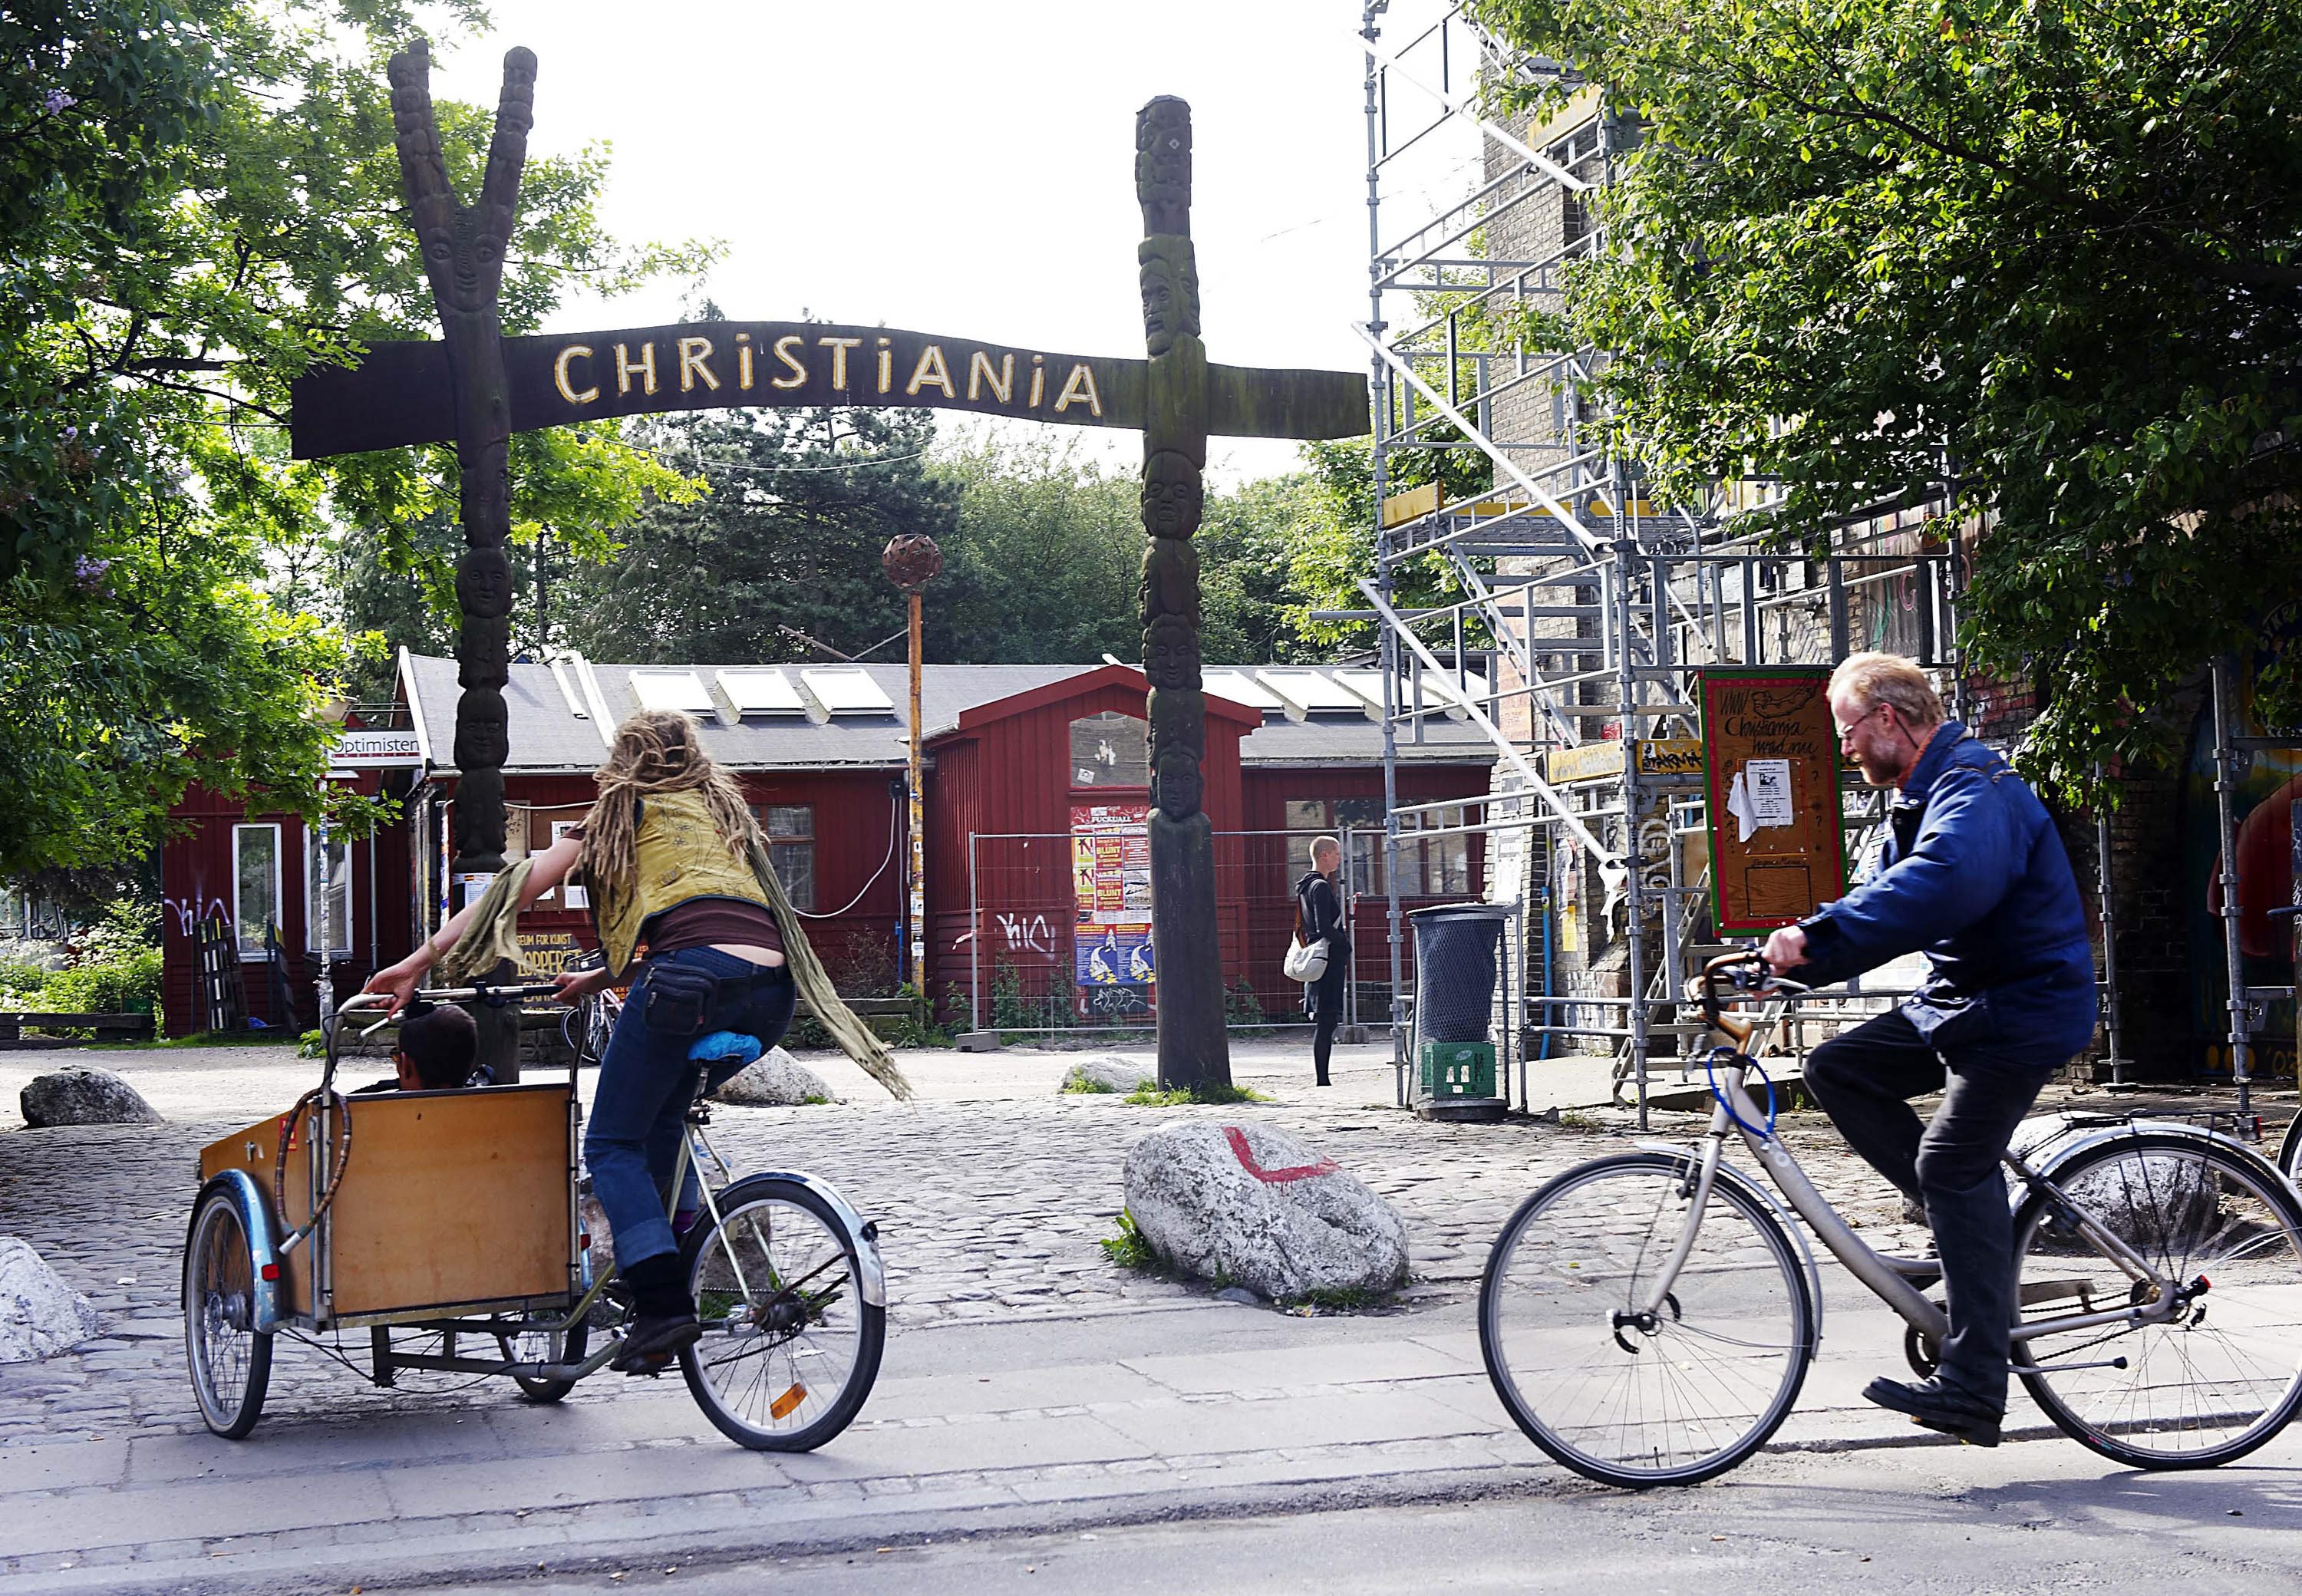 Christiania.